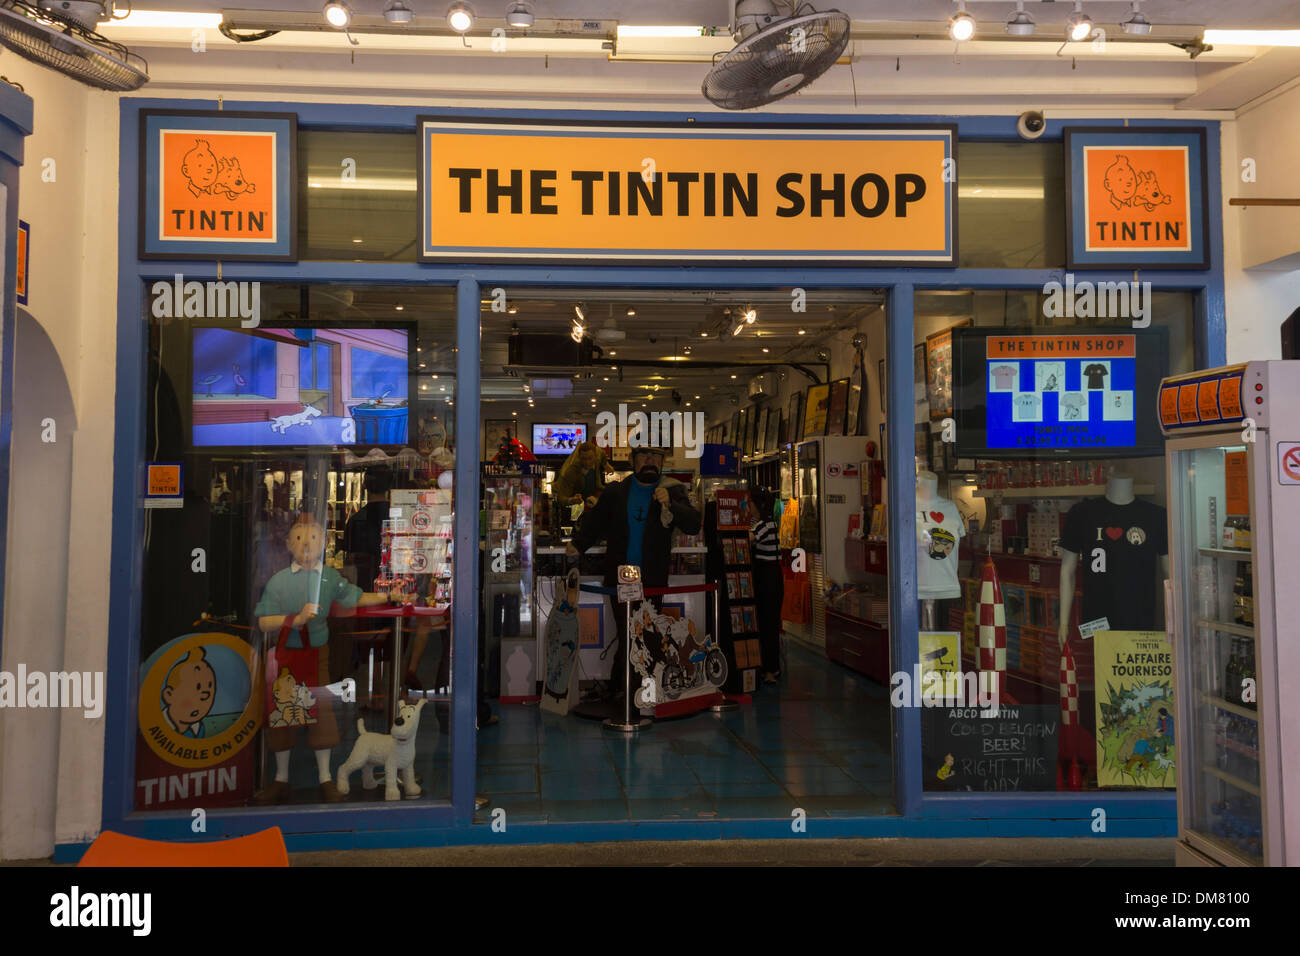 The Tintin Shop, Singapore Stock Photo